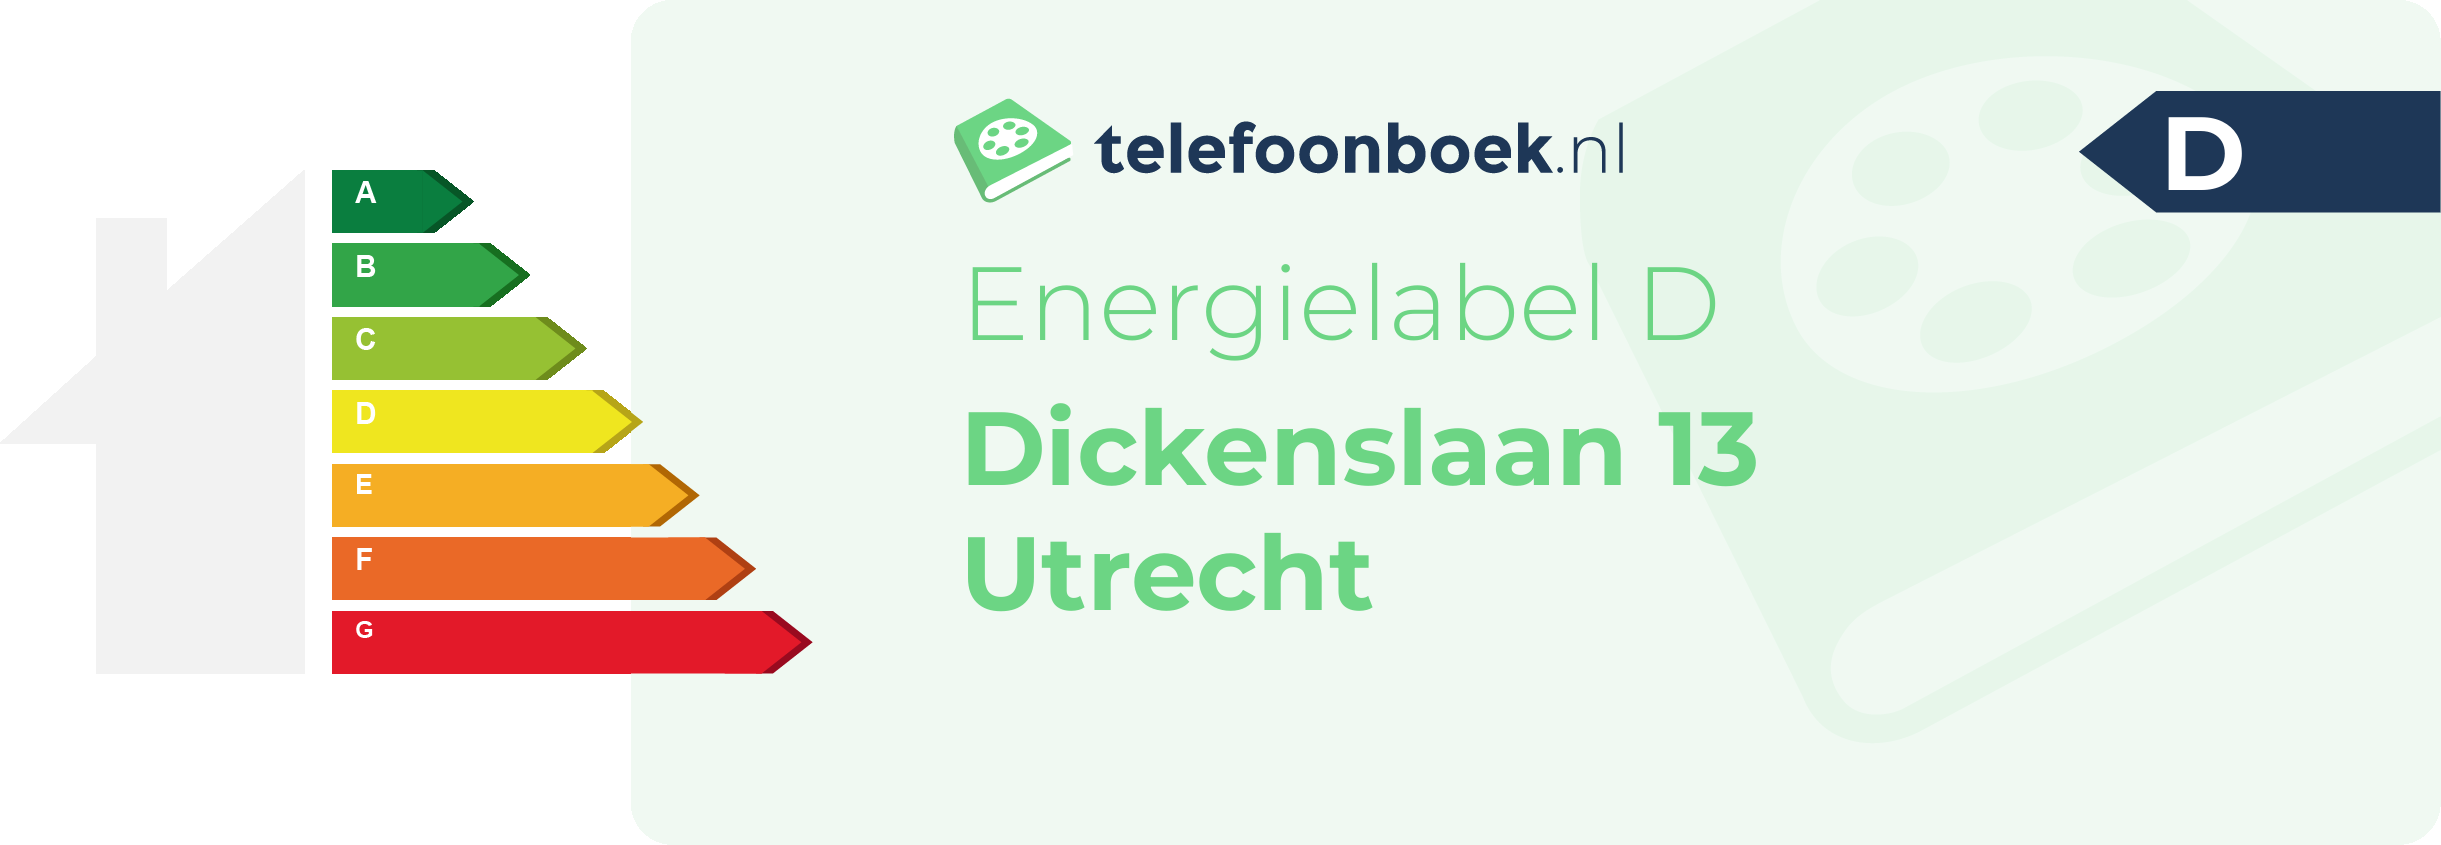 Energielabel Dickenslaan 13 Utrecht